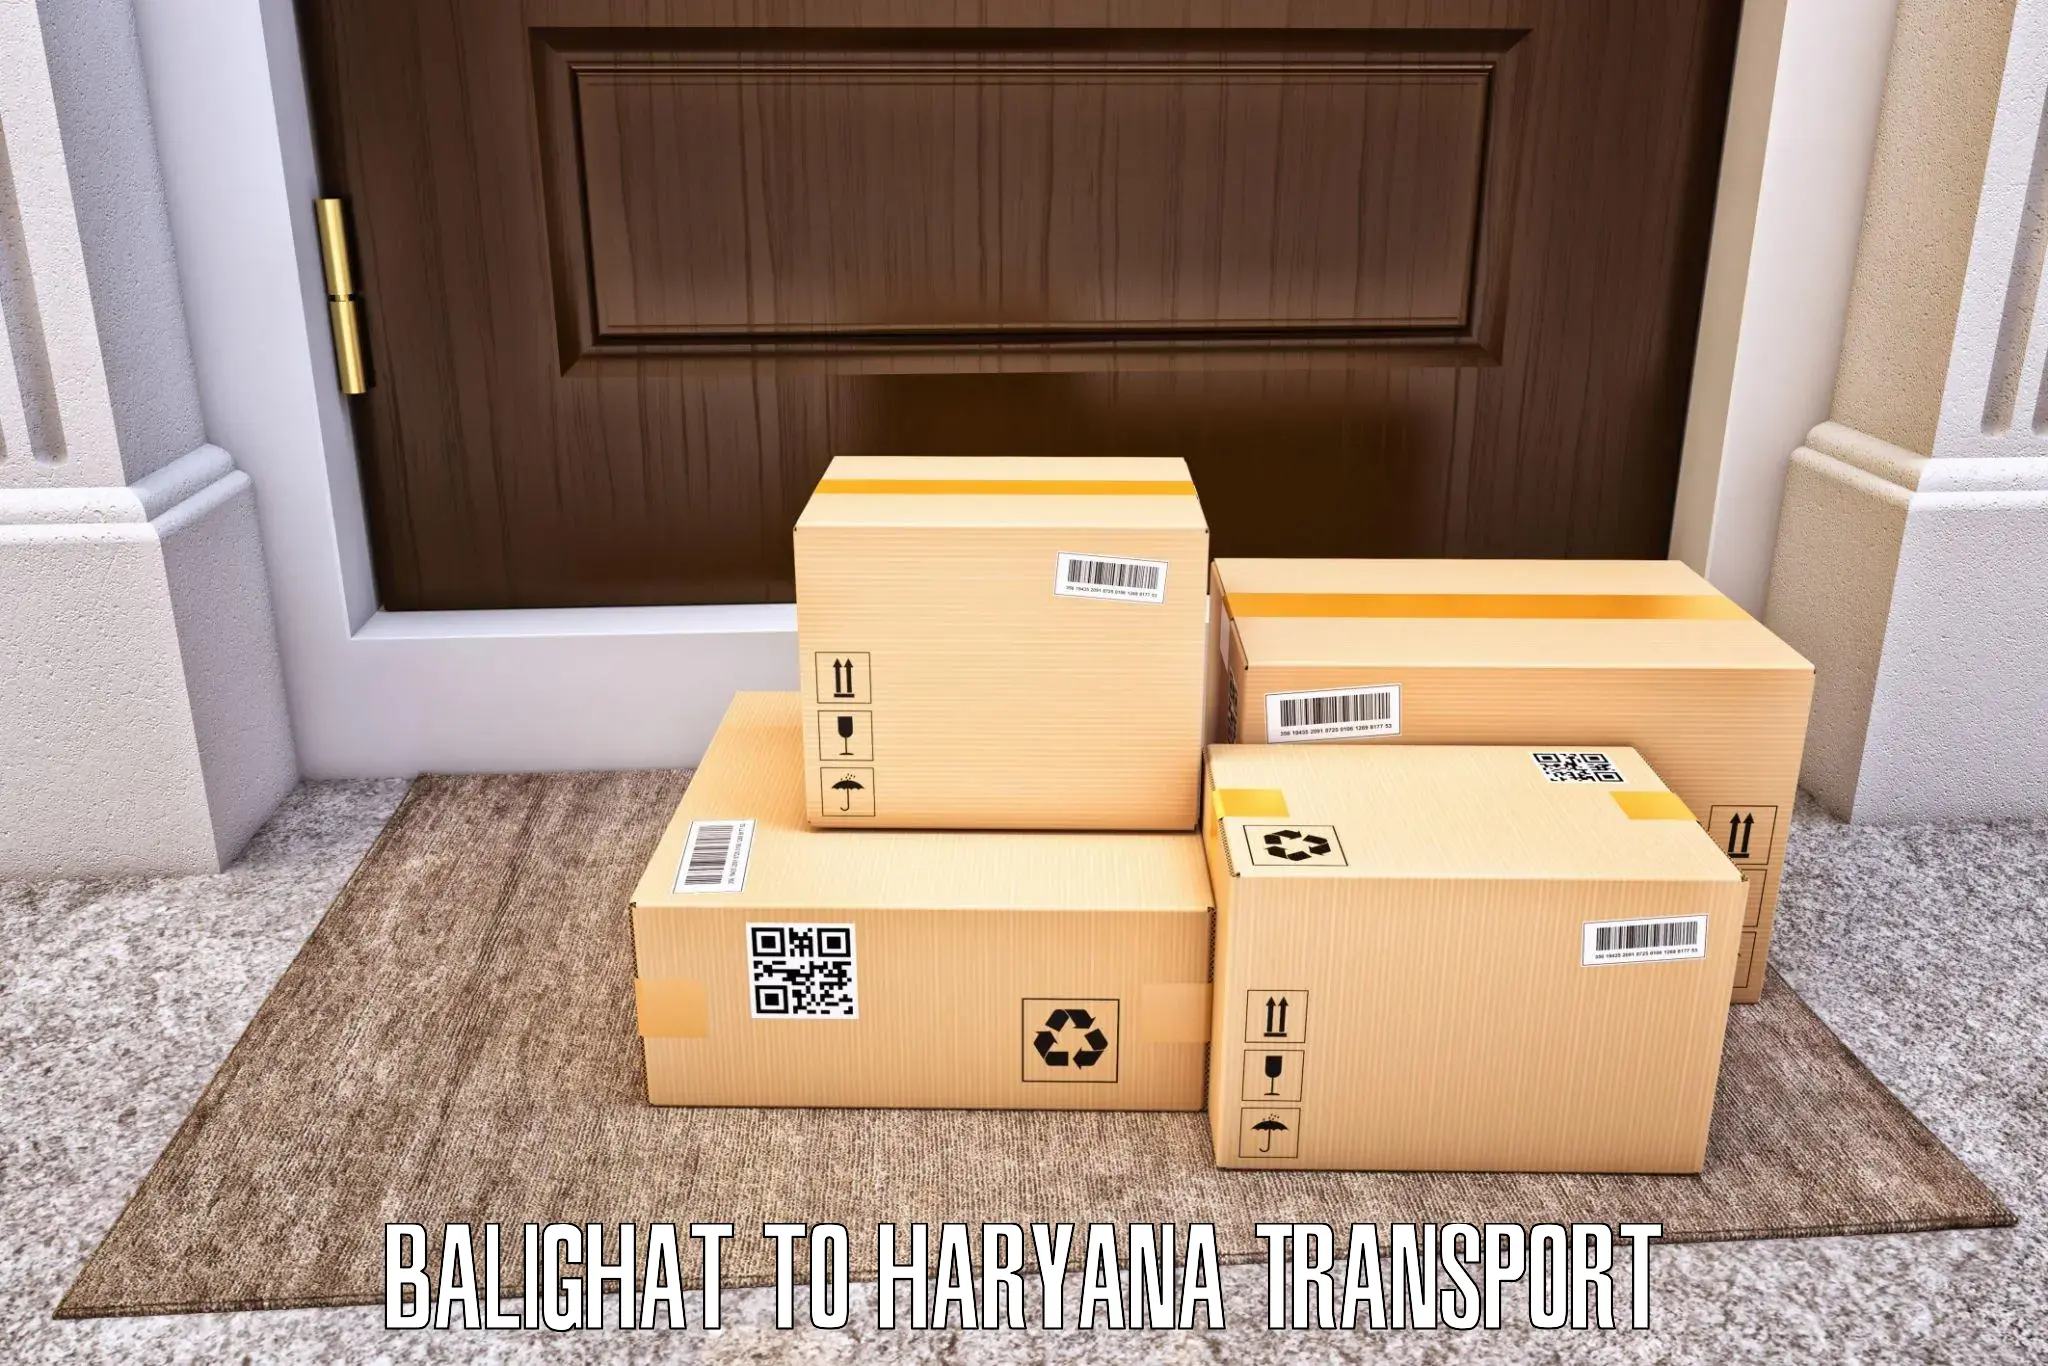 Transport in sharing Balighat to Buguda